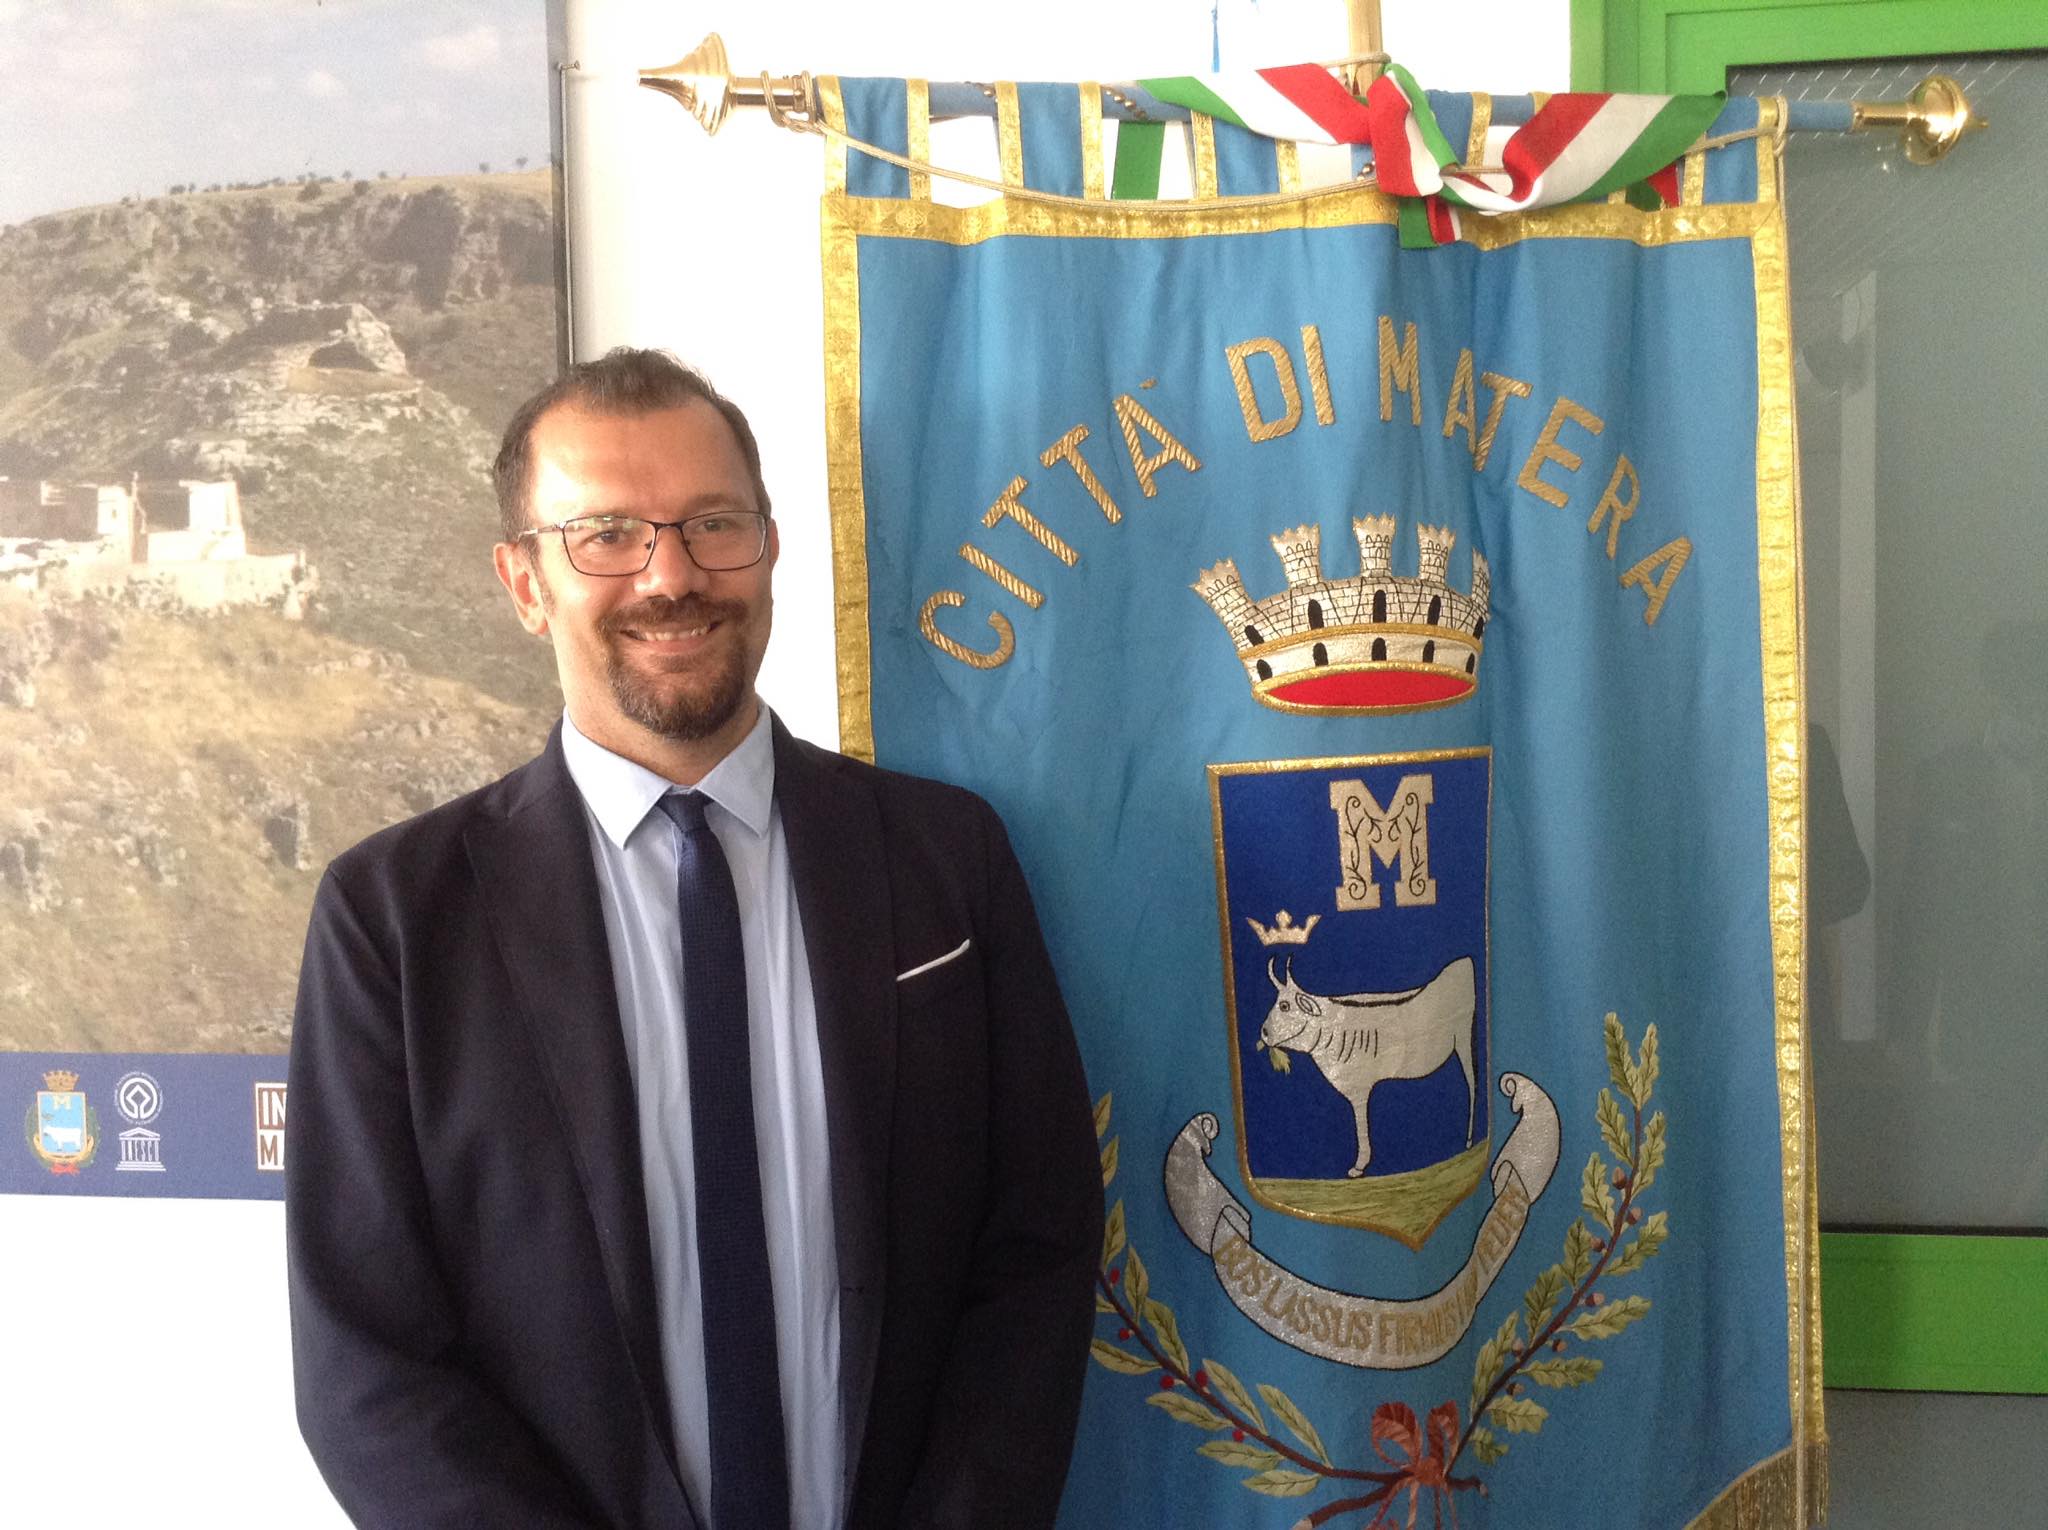 Il sindaco Bennardi: “Fondazione Matera 2019, la sfida è la Capitale dell’innovazione”